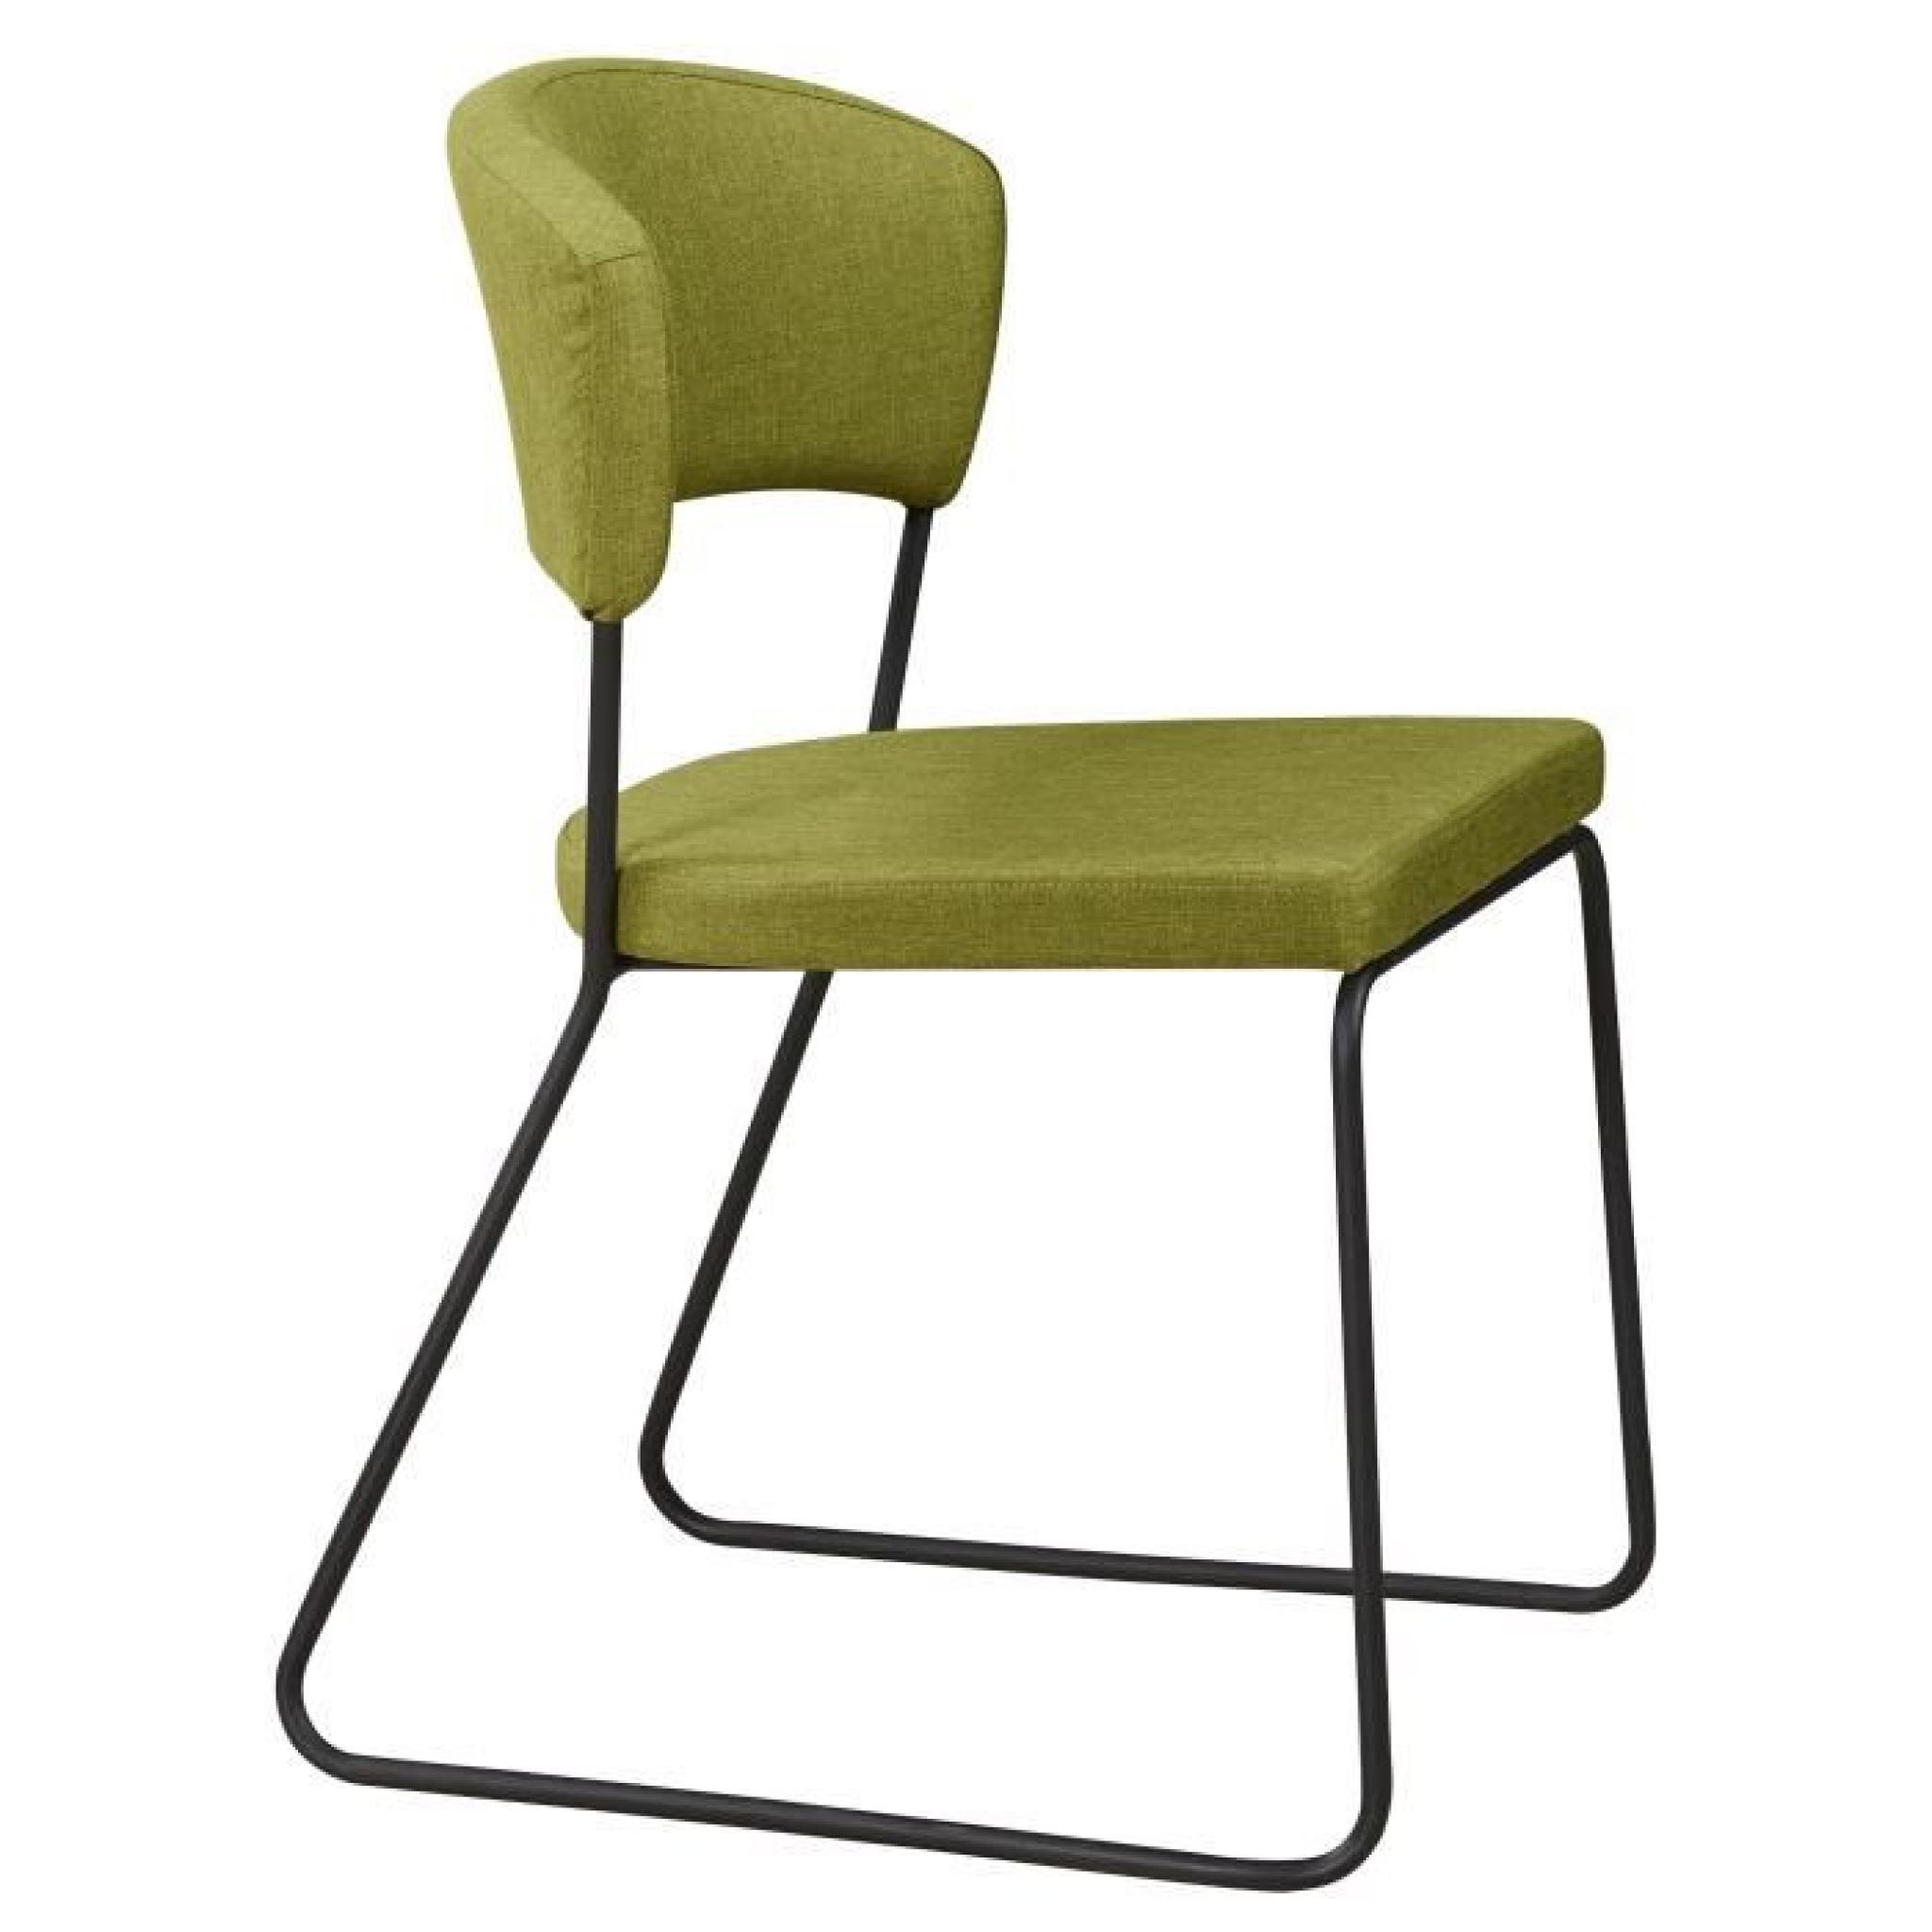 Chaise design minimaliste en tissus coloris vert olive pas cher